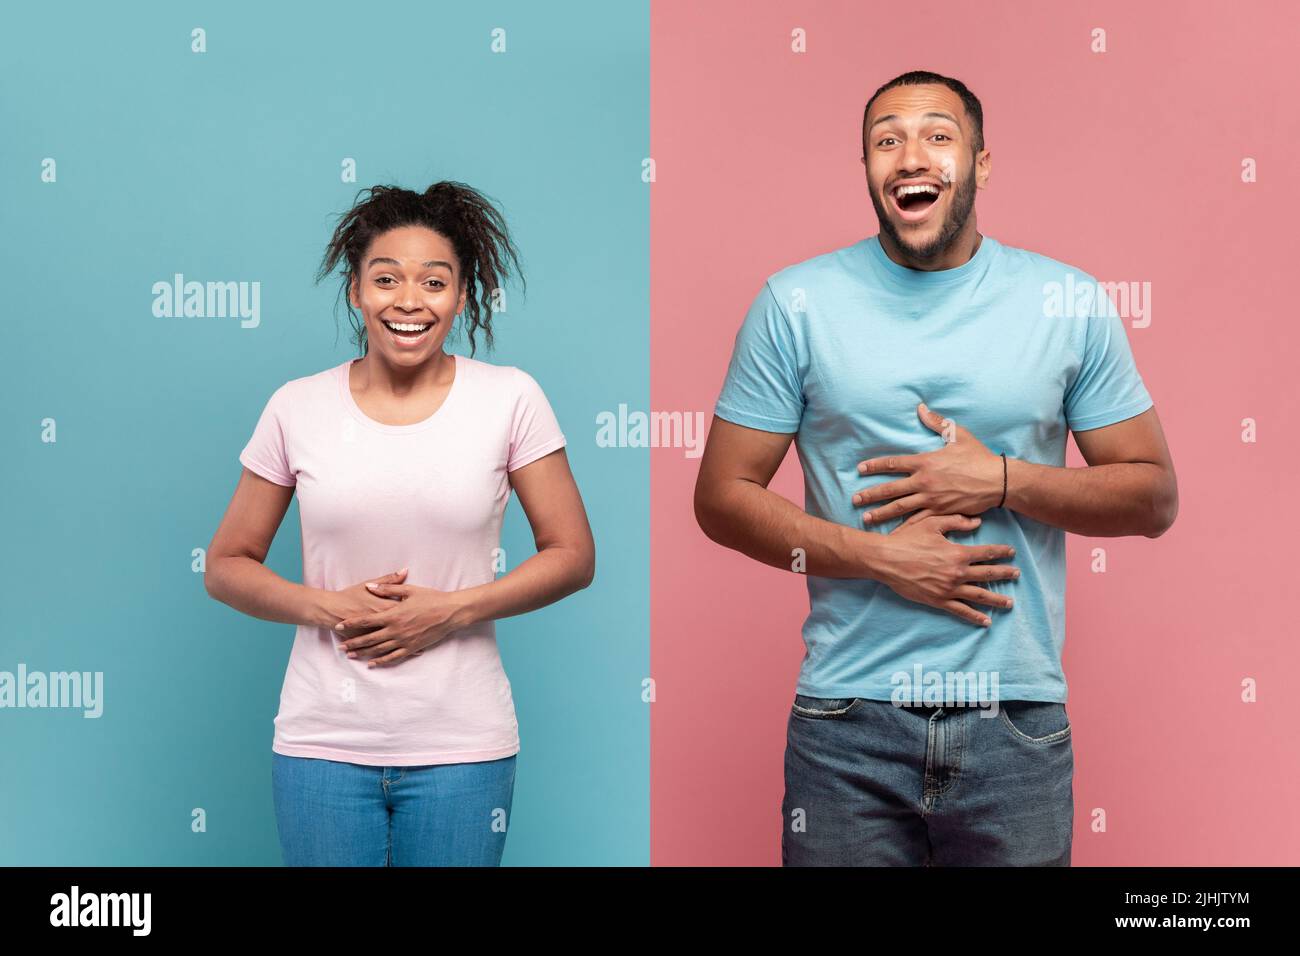 Komisch schwarze Frau und Mann berühren Mägen aus Lachen, kann nicht aufhören zu lachen, rosa und blauen Hintergrund Stockfoto